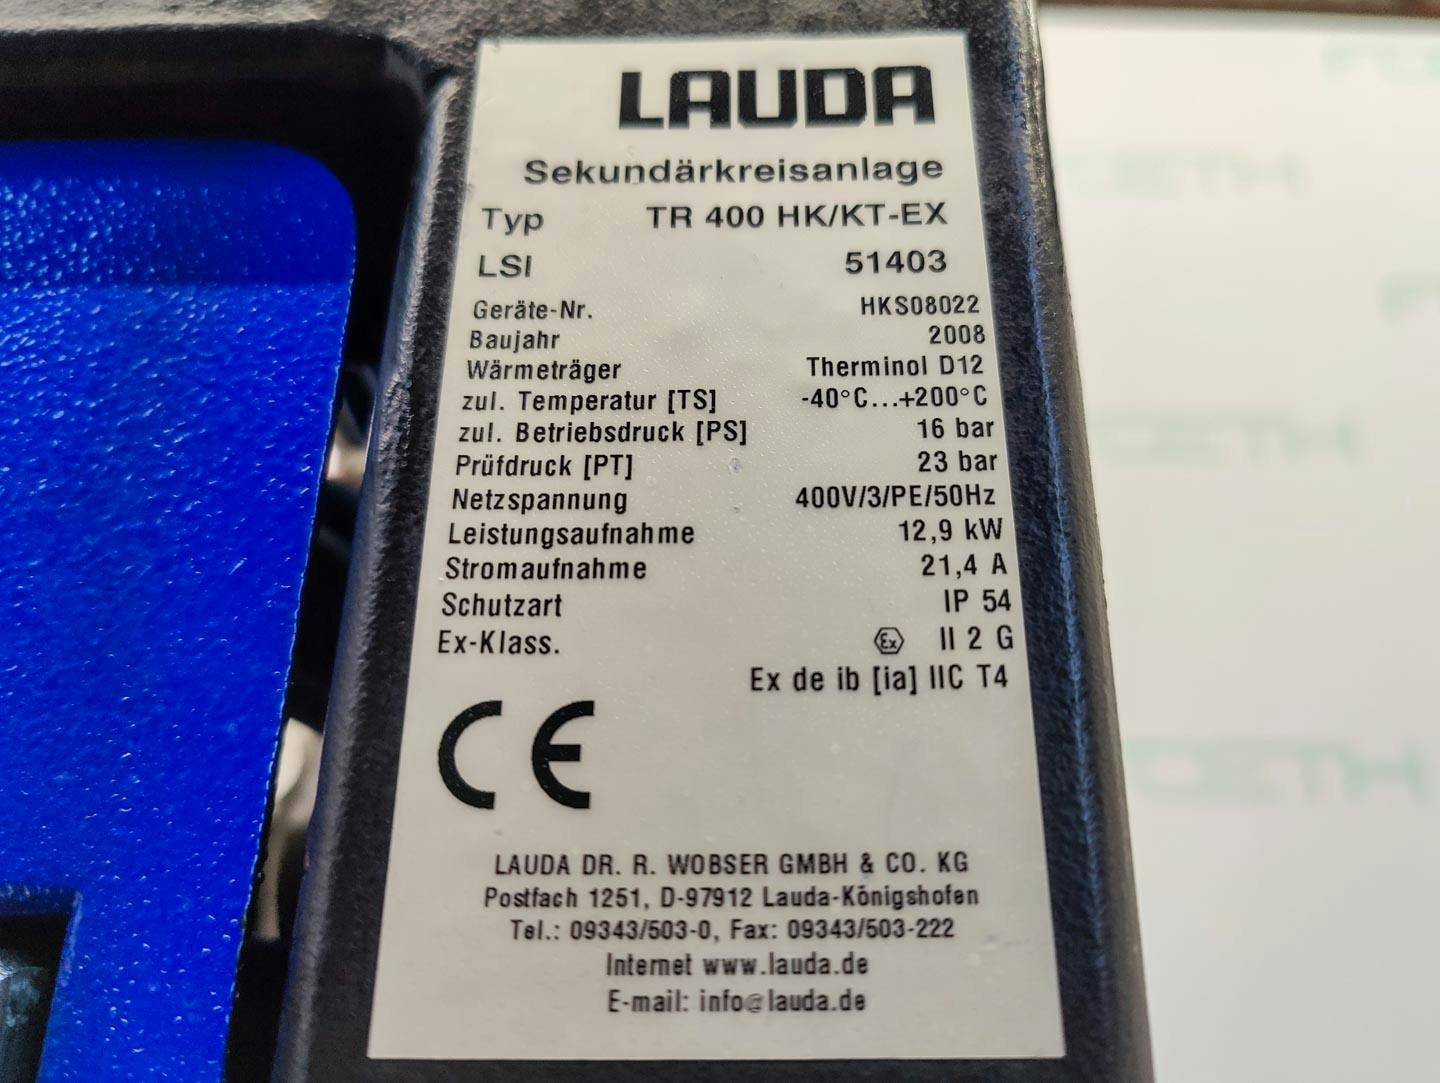 Lauda TR400 HK/KT-EX "secondary circuit system" - Temperature control unit - image 12